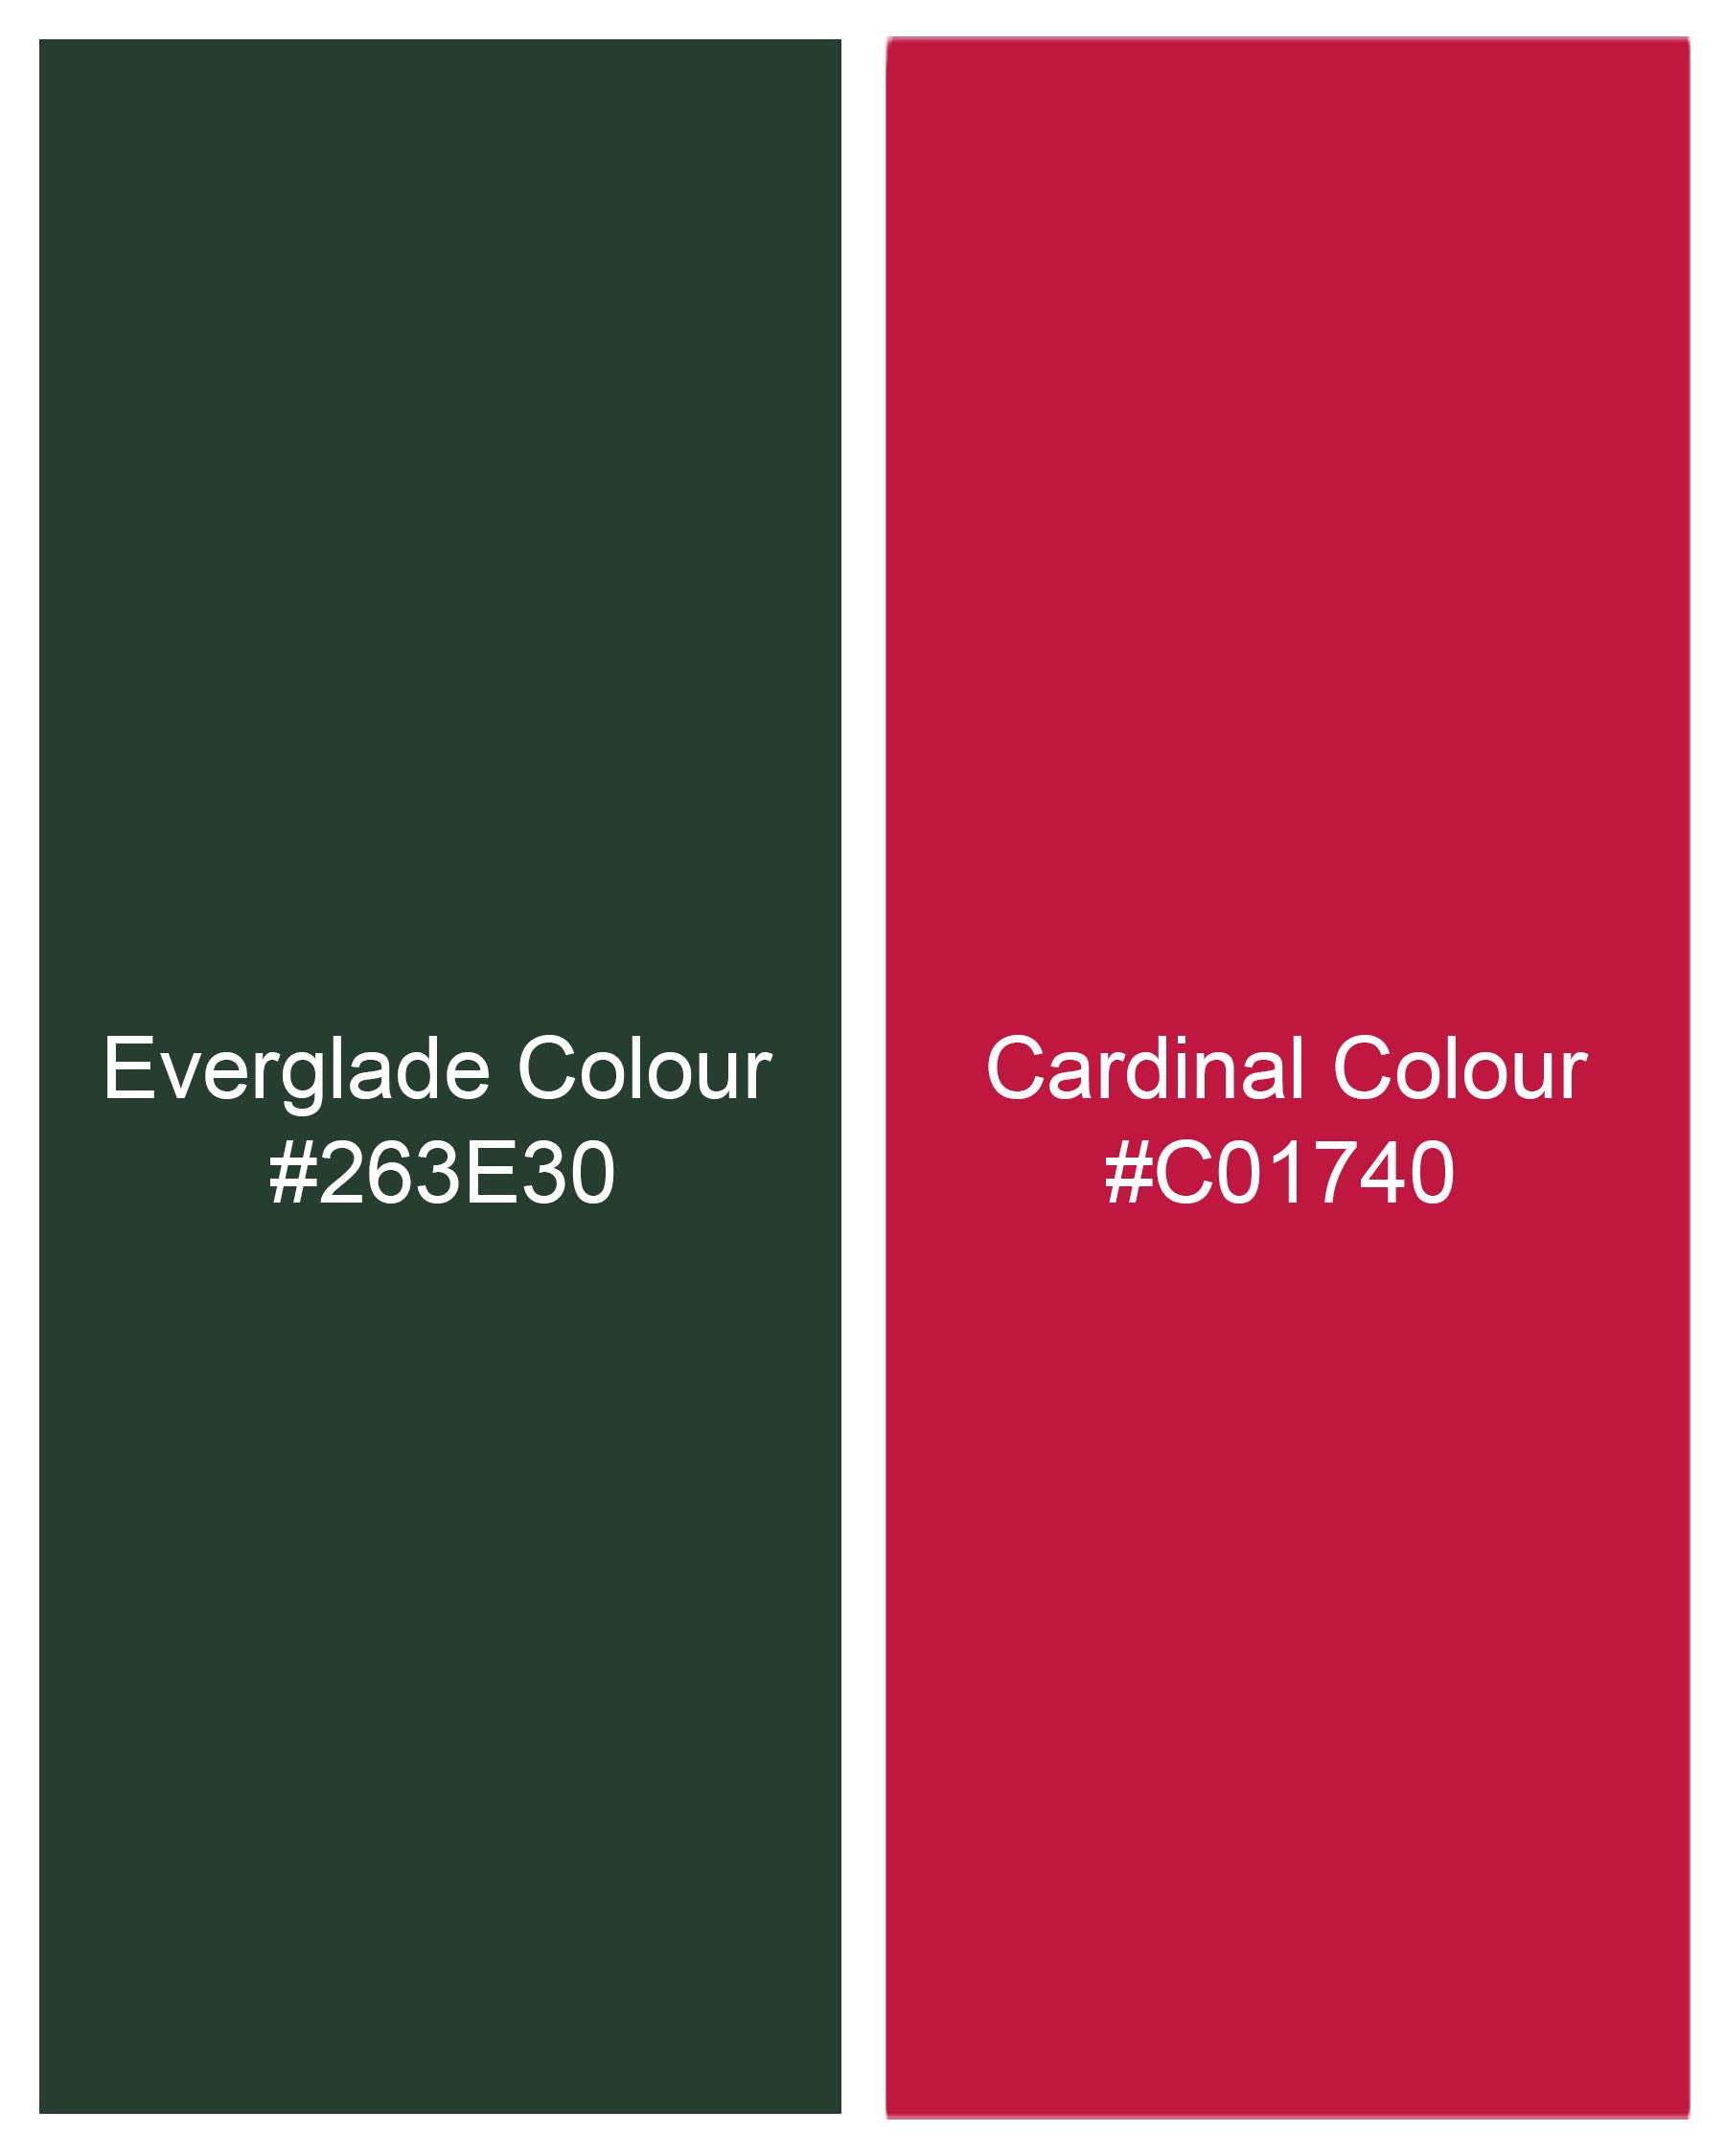 Everglade Green and Cardinal Pink Luxurious Linen Designer Shirt 7850-P117-38, 7850-P117-H-38, 7850-P117-39,7850-P117-H-39, 7850-P117-40, 7850-P117-H-40, 7850-P117-42, 7850-P117-H-42, 7850-P117-44, 7850-P117-H-44, 7850-P117-46, 7850-P117-H-46, 7850-P117-48, 7850-P117-H-48, 7850-P117-50, 7850-P117-H-50, 7850-P117-52, 7850-P117-H-52